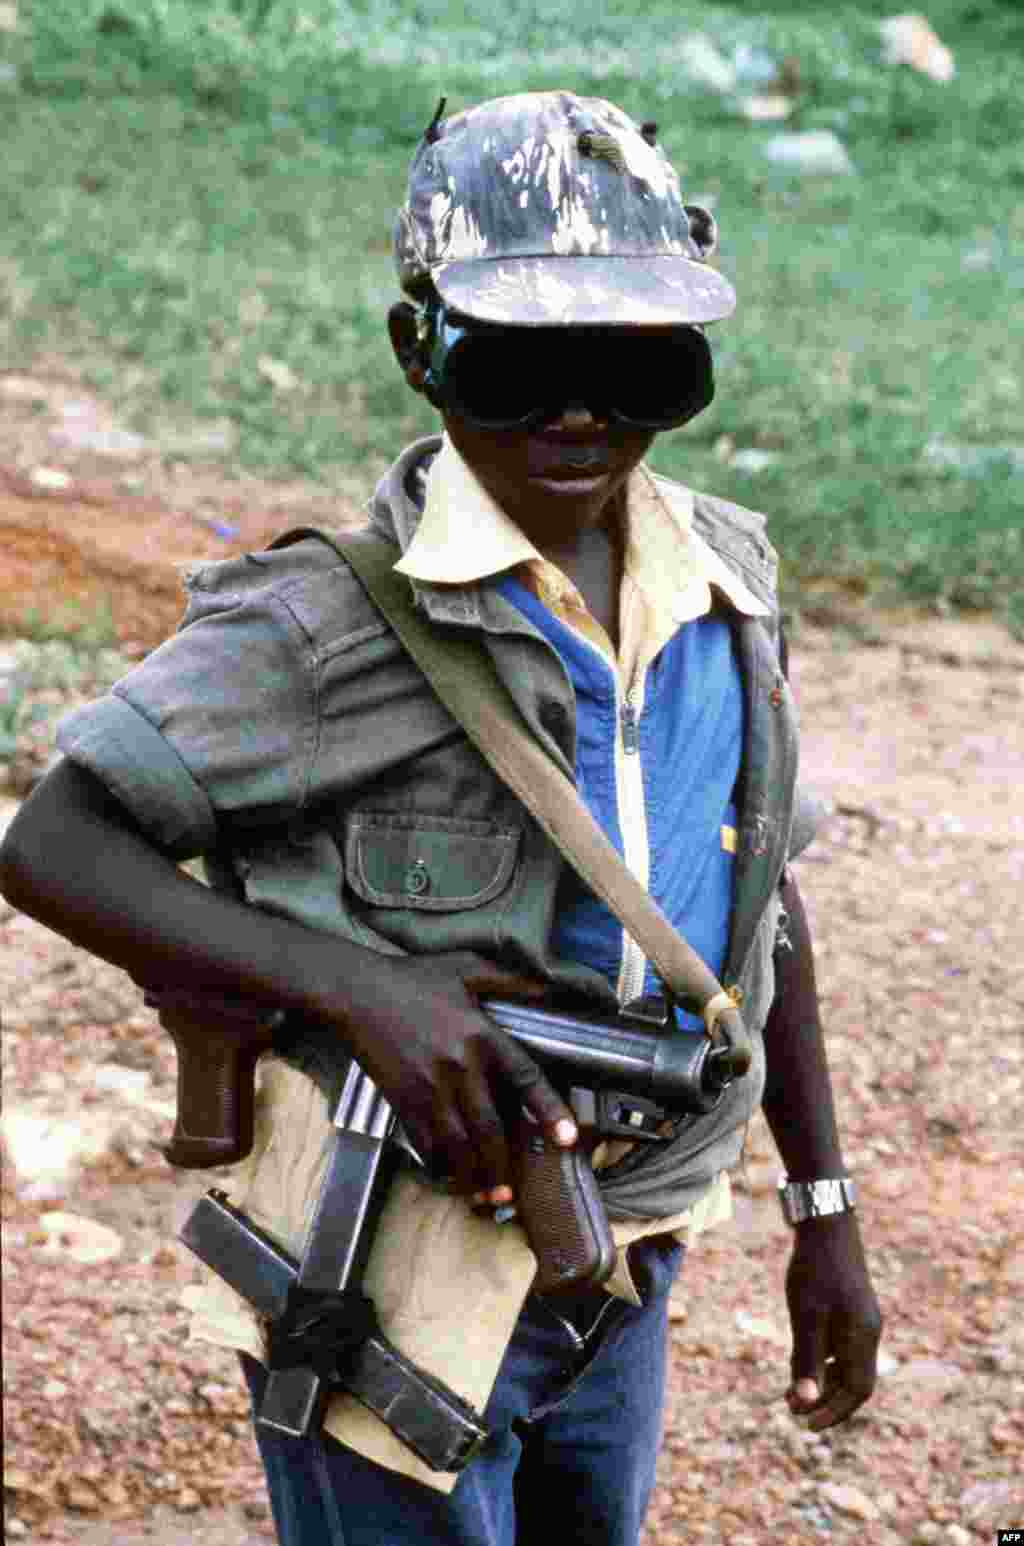 Не менее 30 тысяч детей из Уганды не пойдут в школу в этом году &ndash; их используют в качестве солдат в религиозном конфликте. Похищенным и завербованным мальчикам лидеры разрозненных группировок дают в руки автоматы. Иногда вооружают и девочек, но значительно чаще их используют как секс-рабынь. На фото &ndash; маленький боец партизанской группировки Народная армия сопротивления Уганды